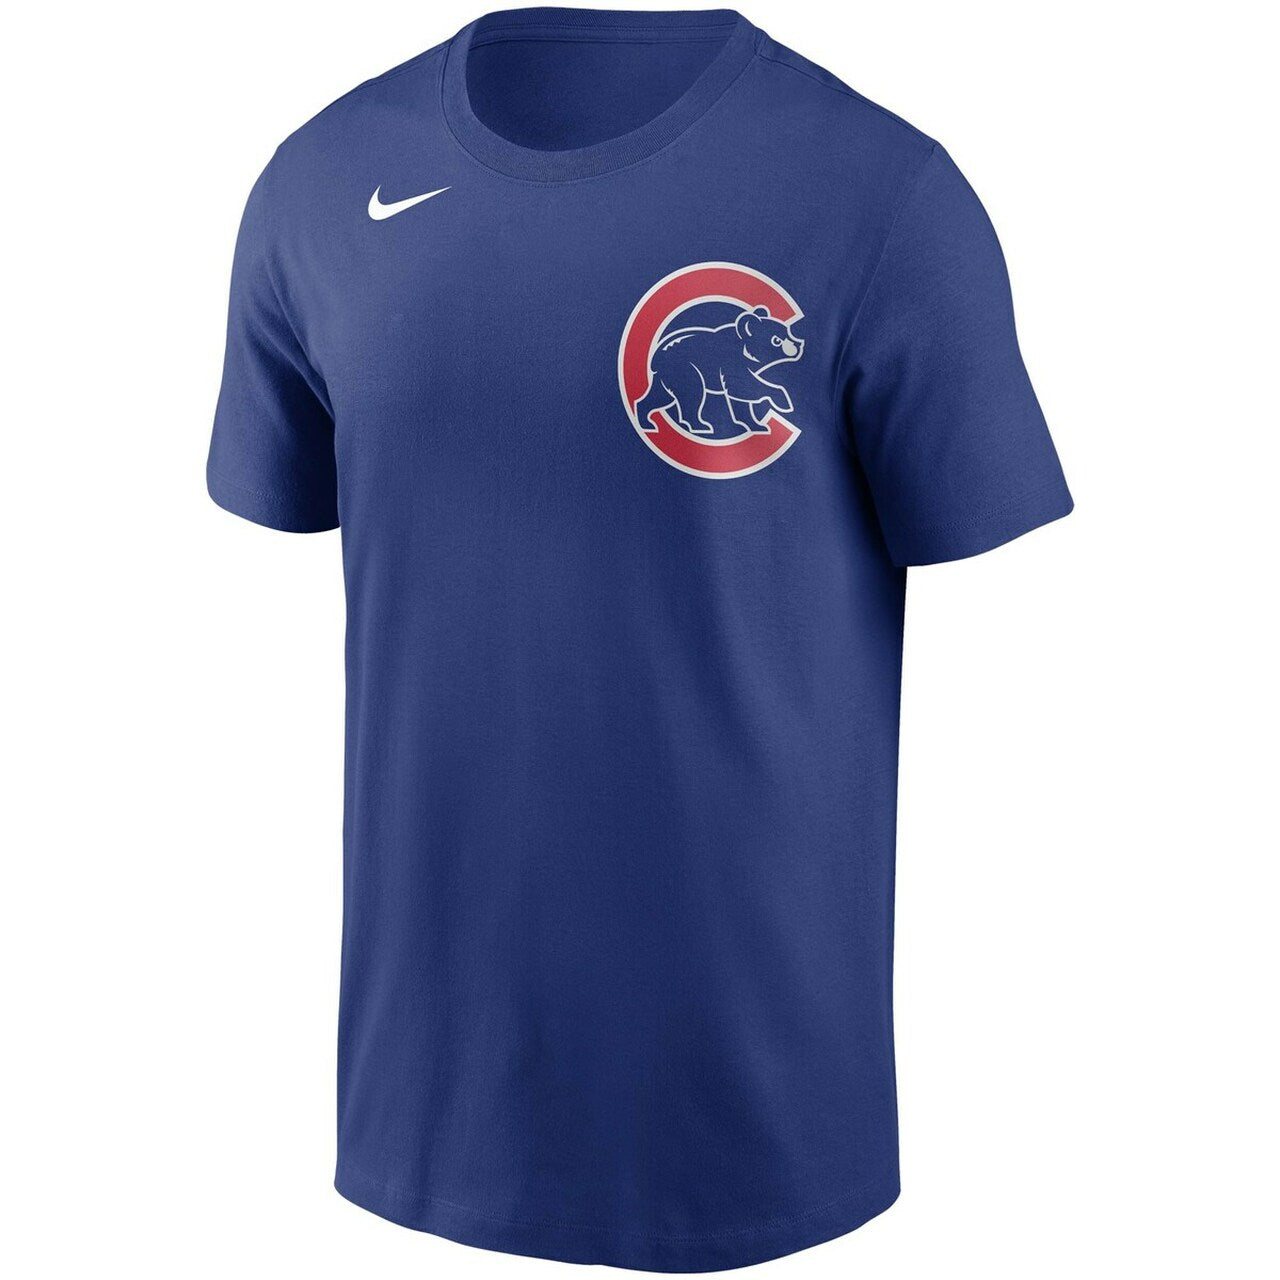 Youth Chicago Cubs Seiya Suzuki Nike Royal Blue Name & Number T-Shirt